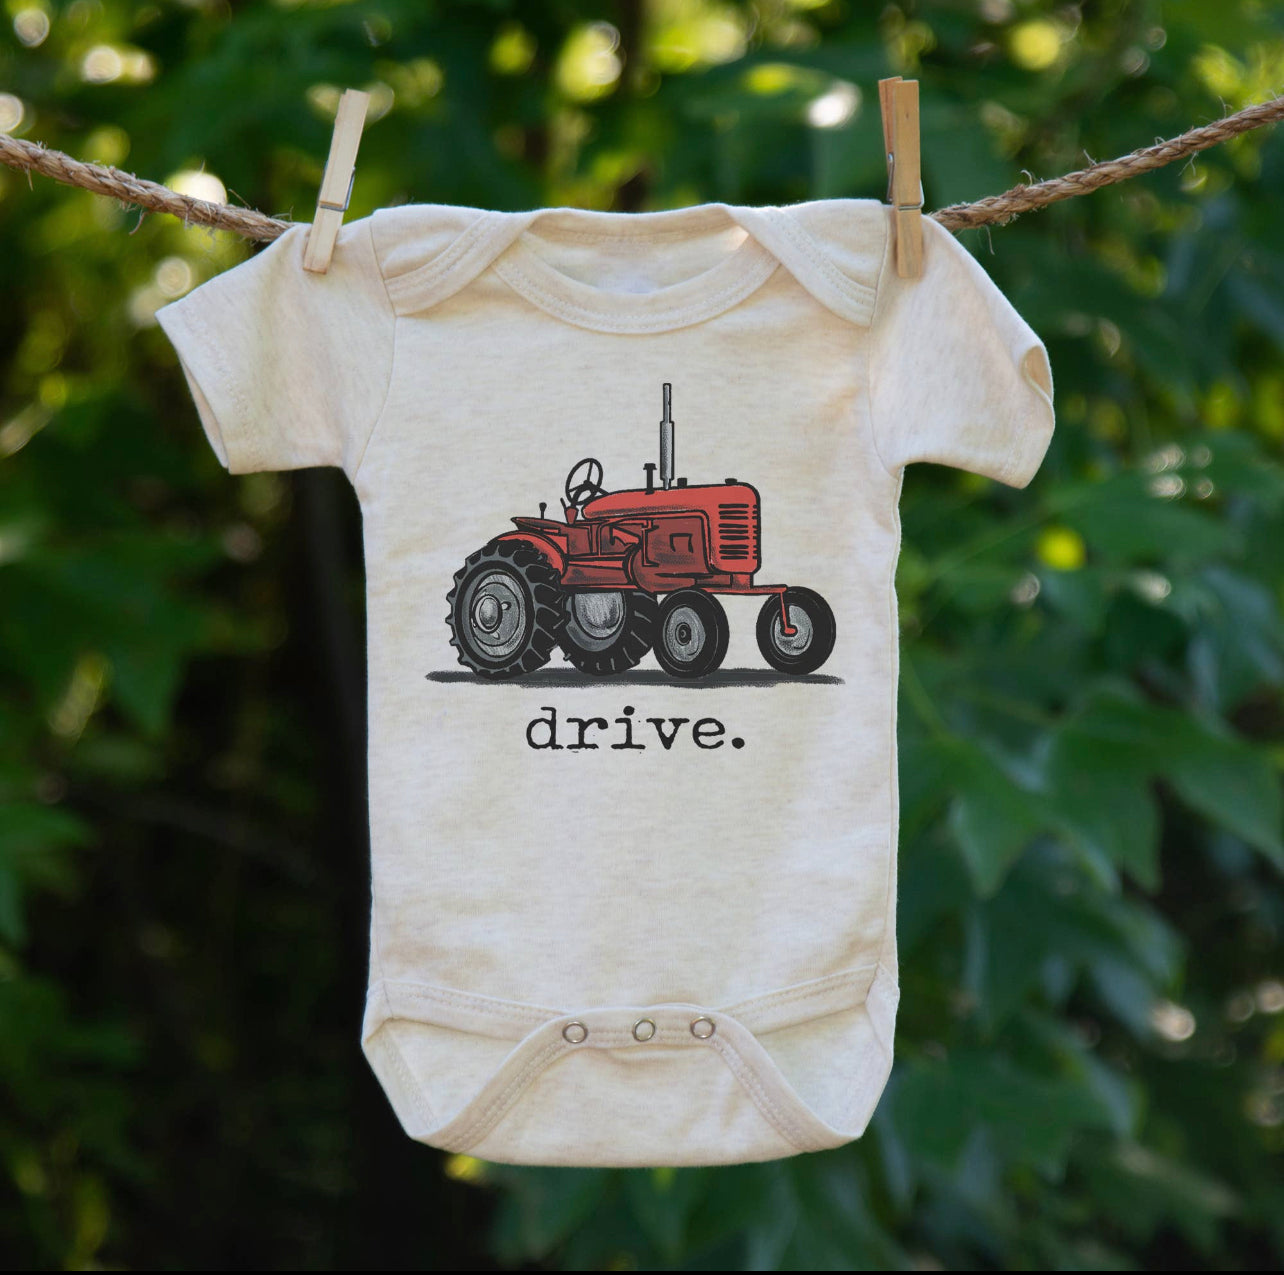 Tractor “Drive” onesie